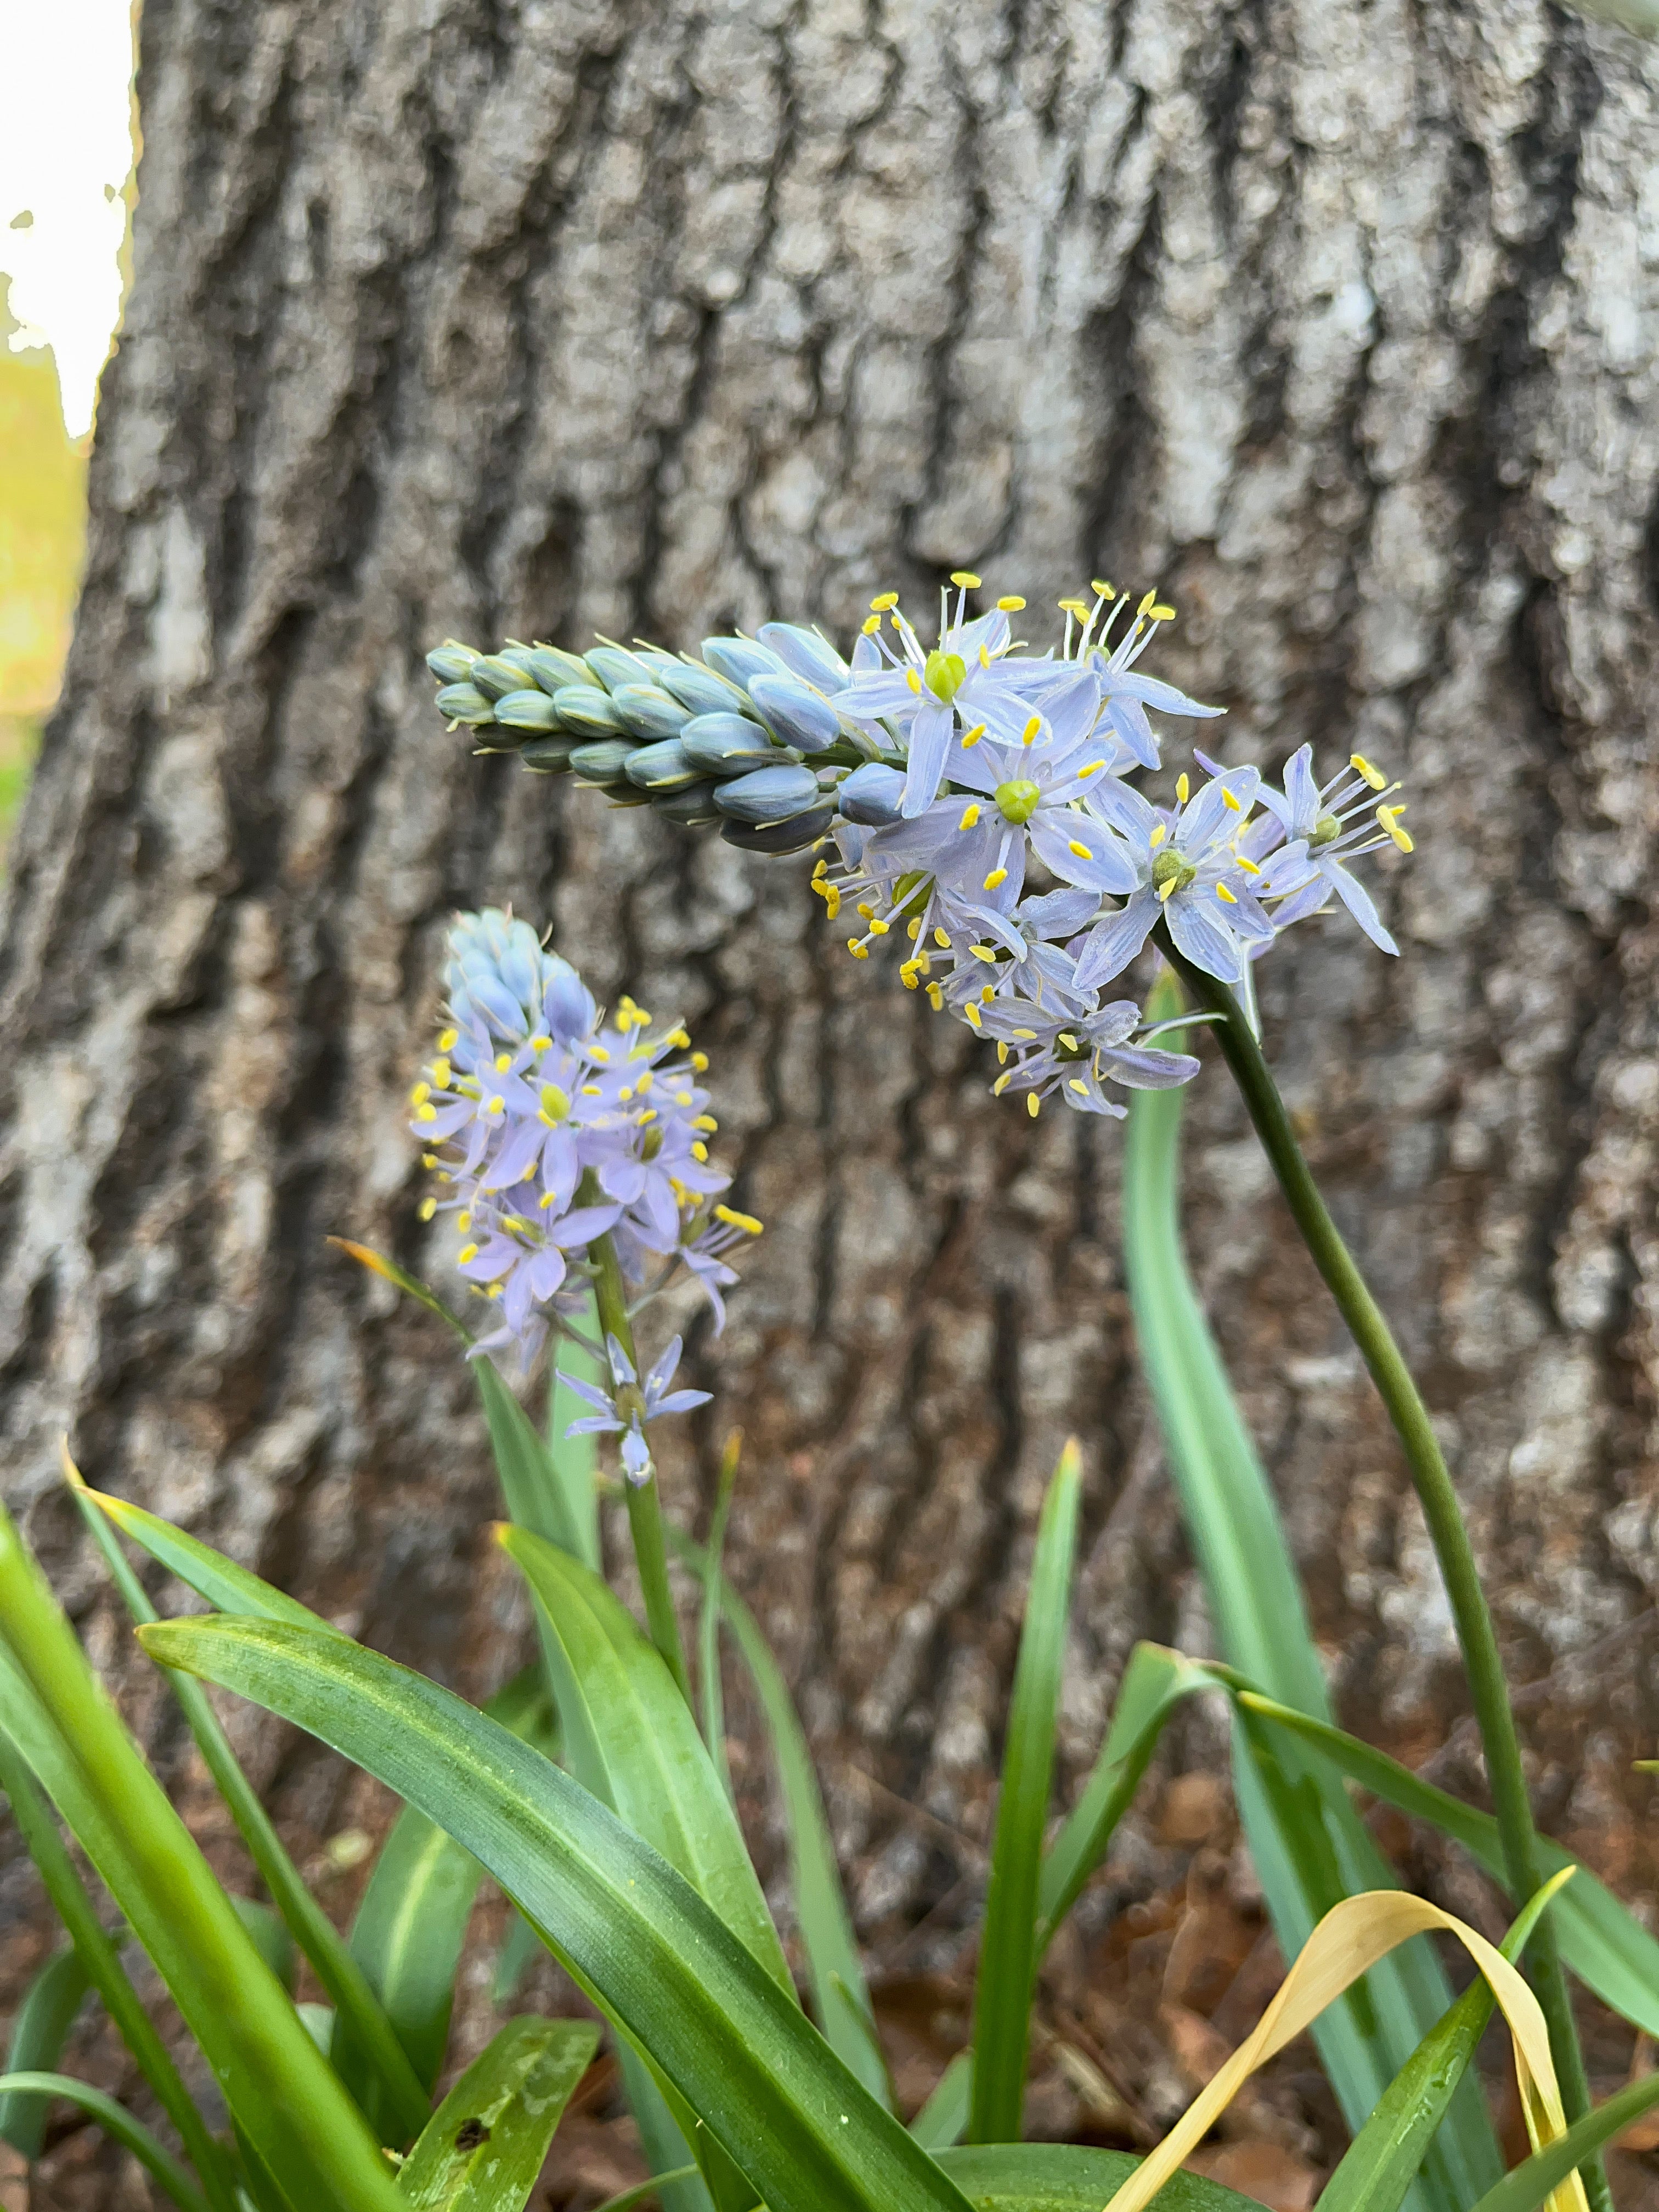 Camassia Scilloides / Wild Hyacinth (Asparagus Family)